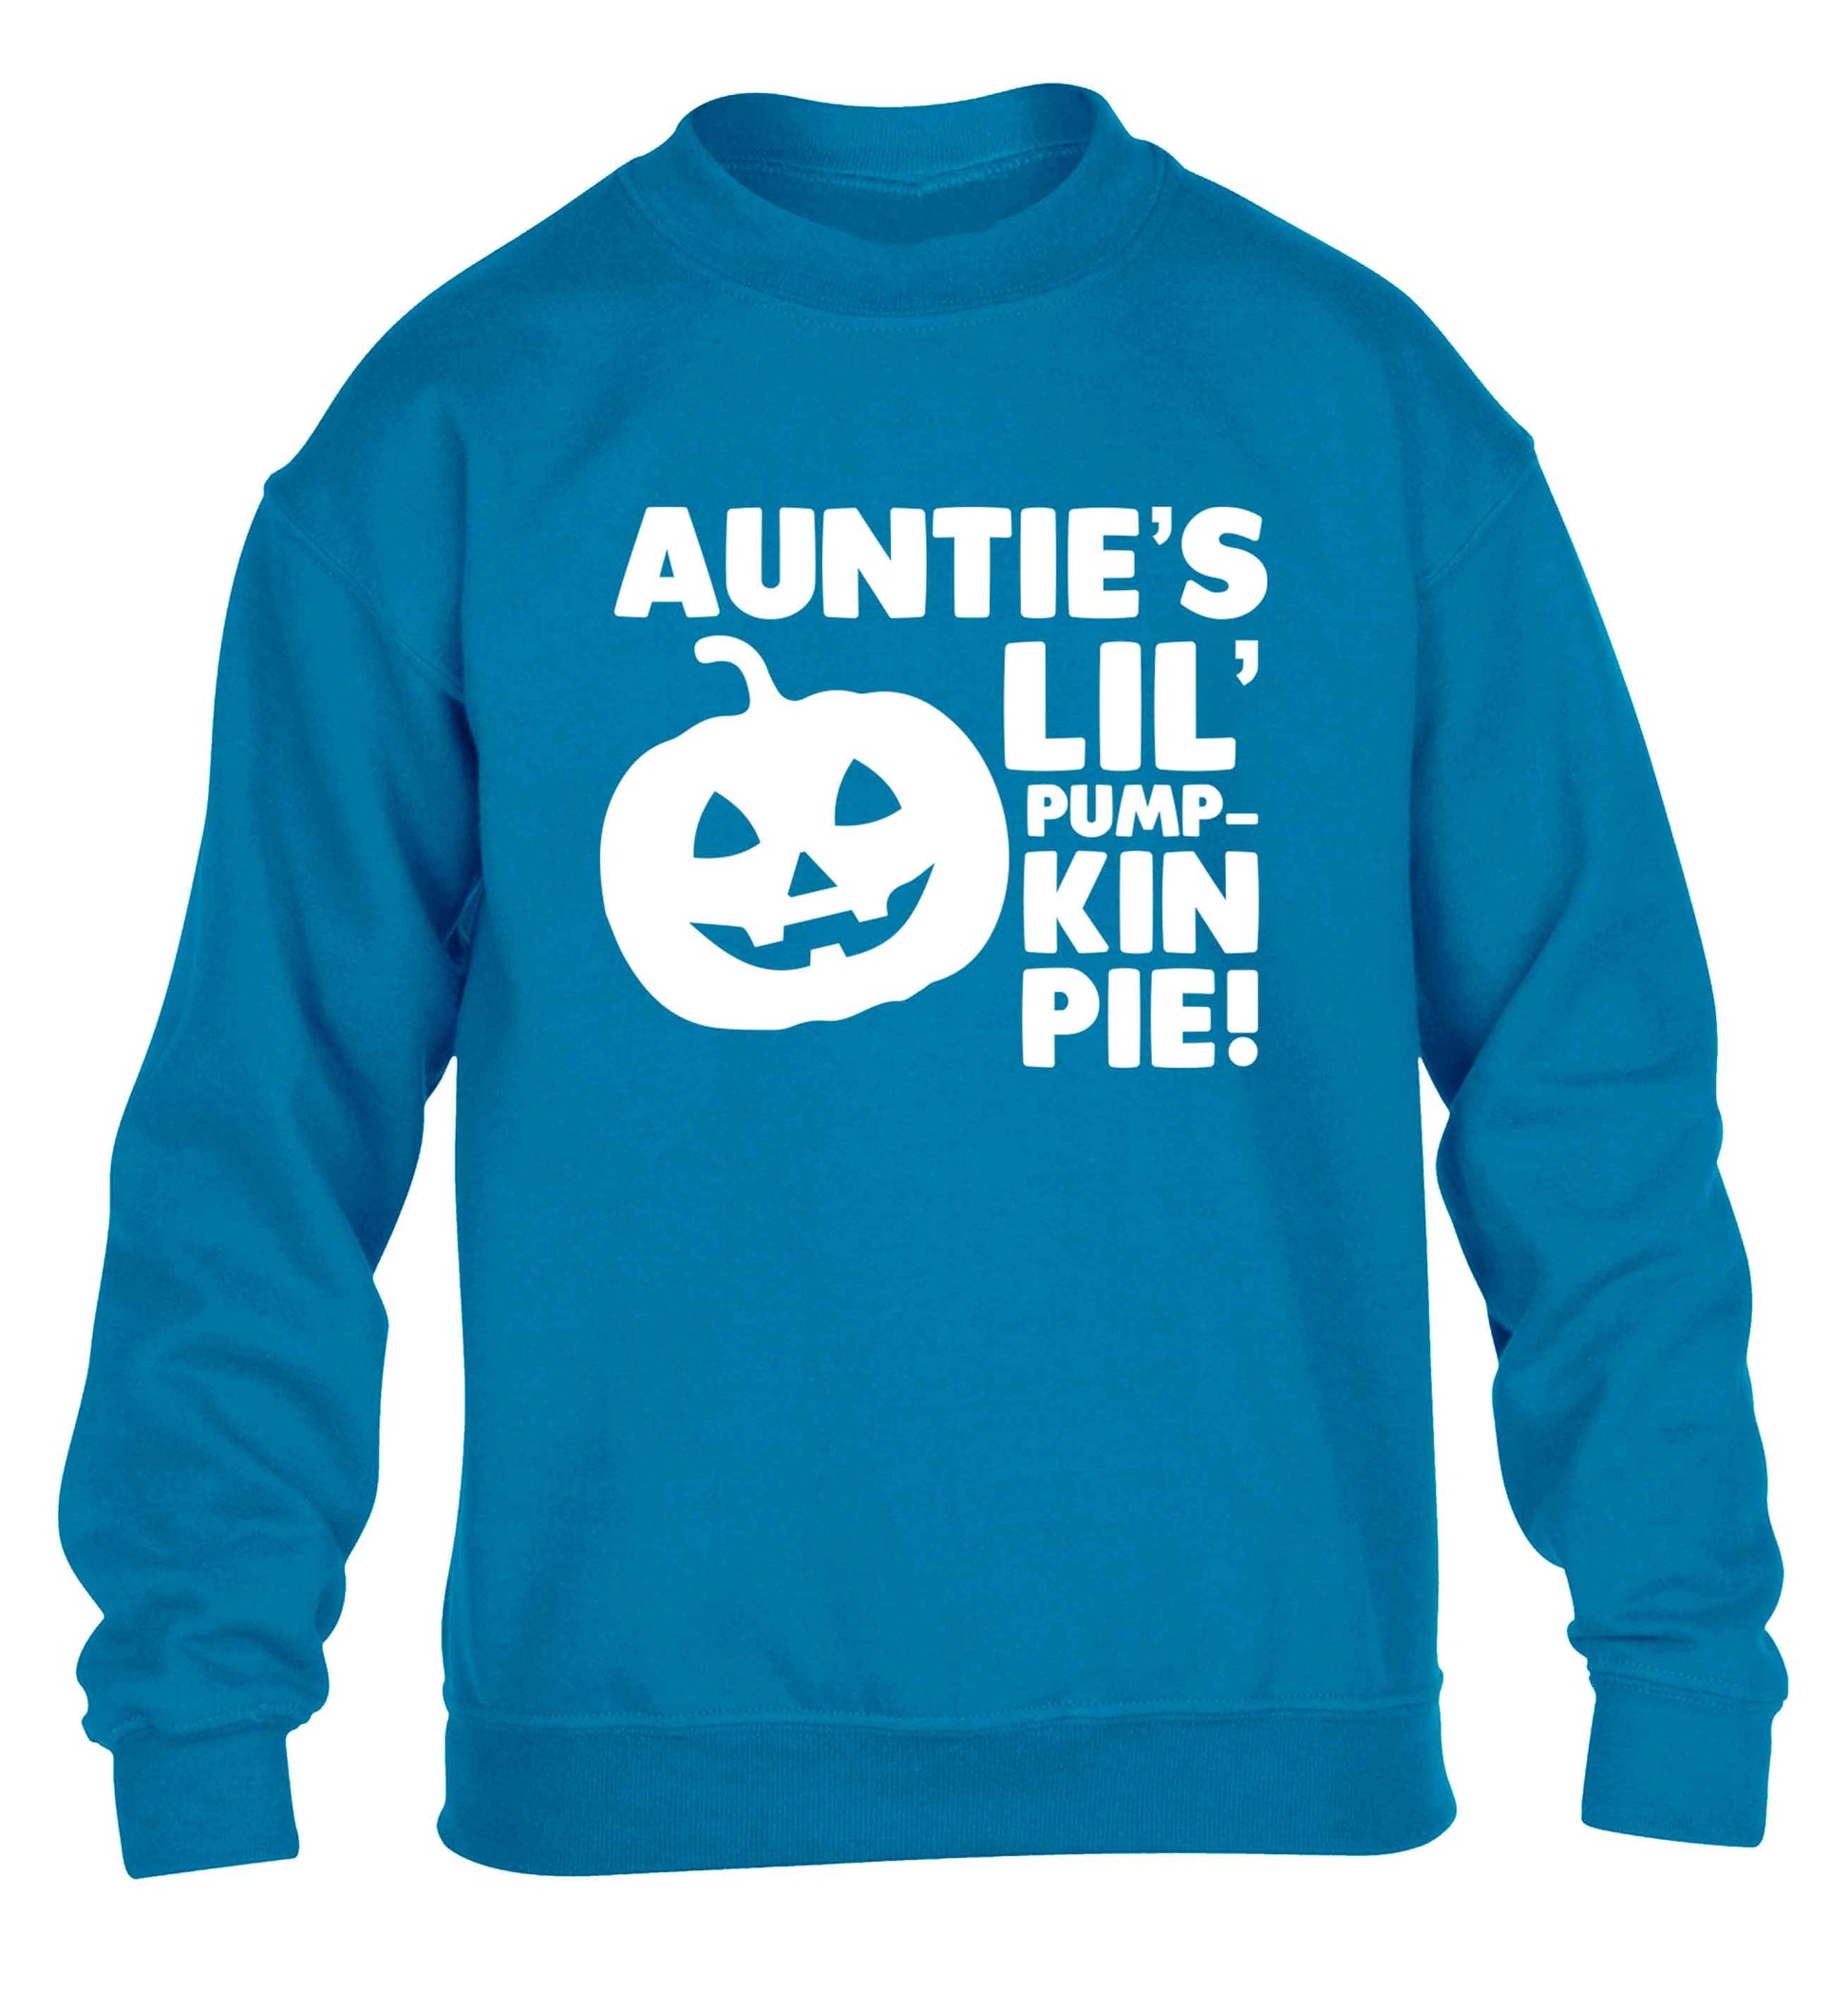 Auntie's lil' pumpkin pie children's blue sweater 12-13 Years